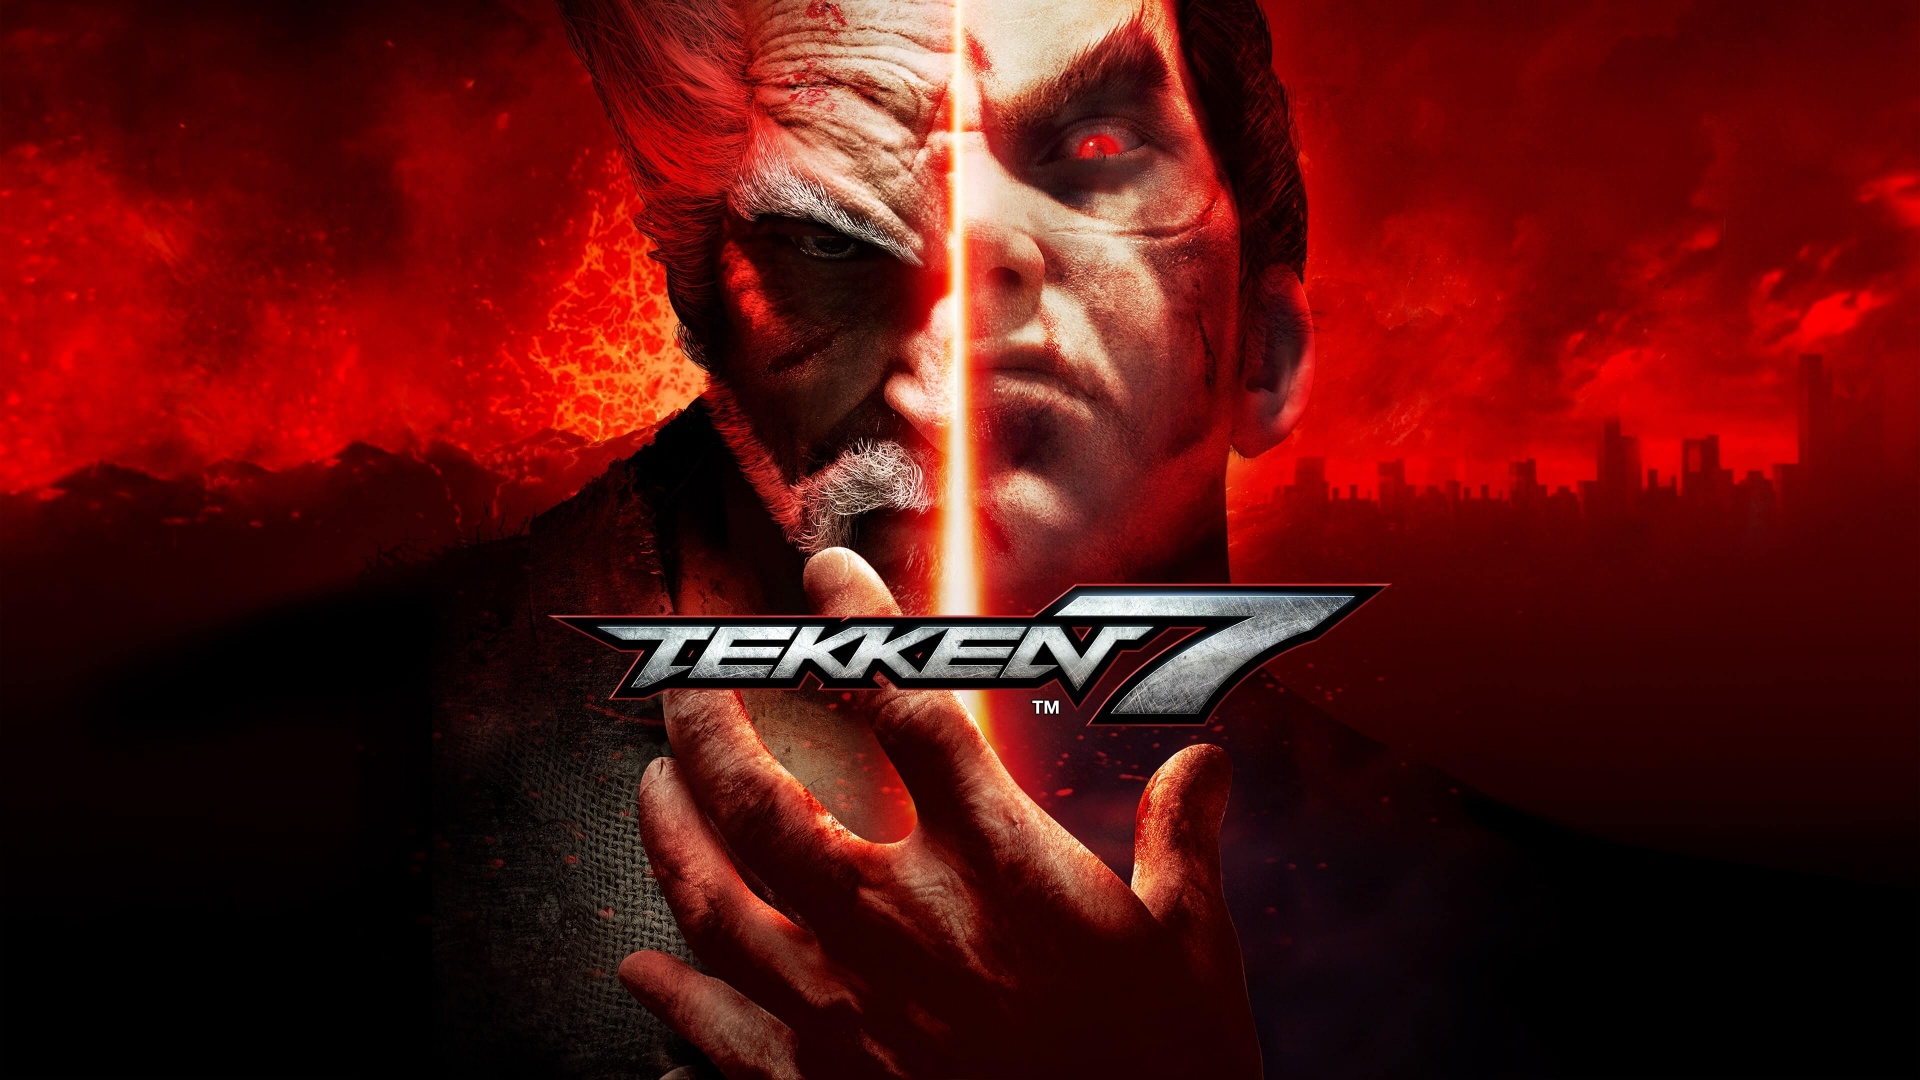 Tekken Wallpapers - Top 35 Best Tekken Wallpapers Download